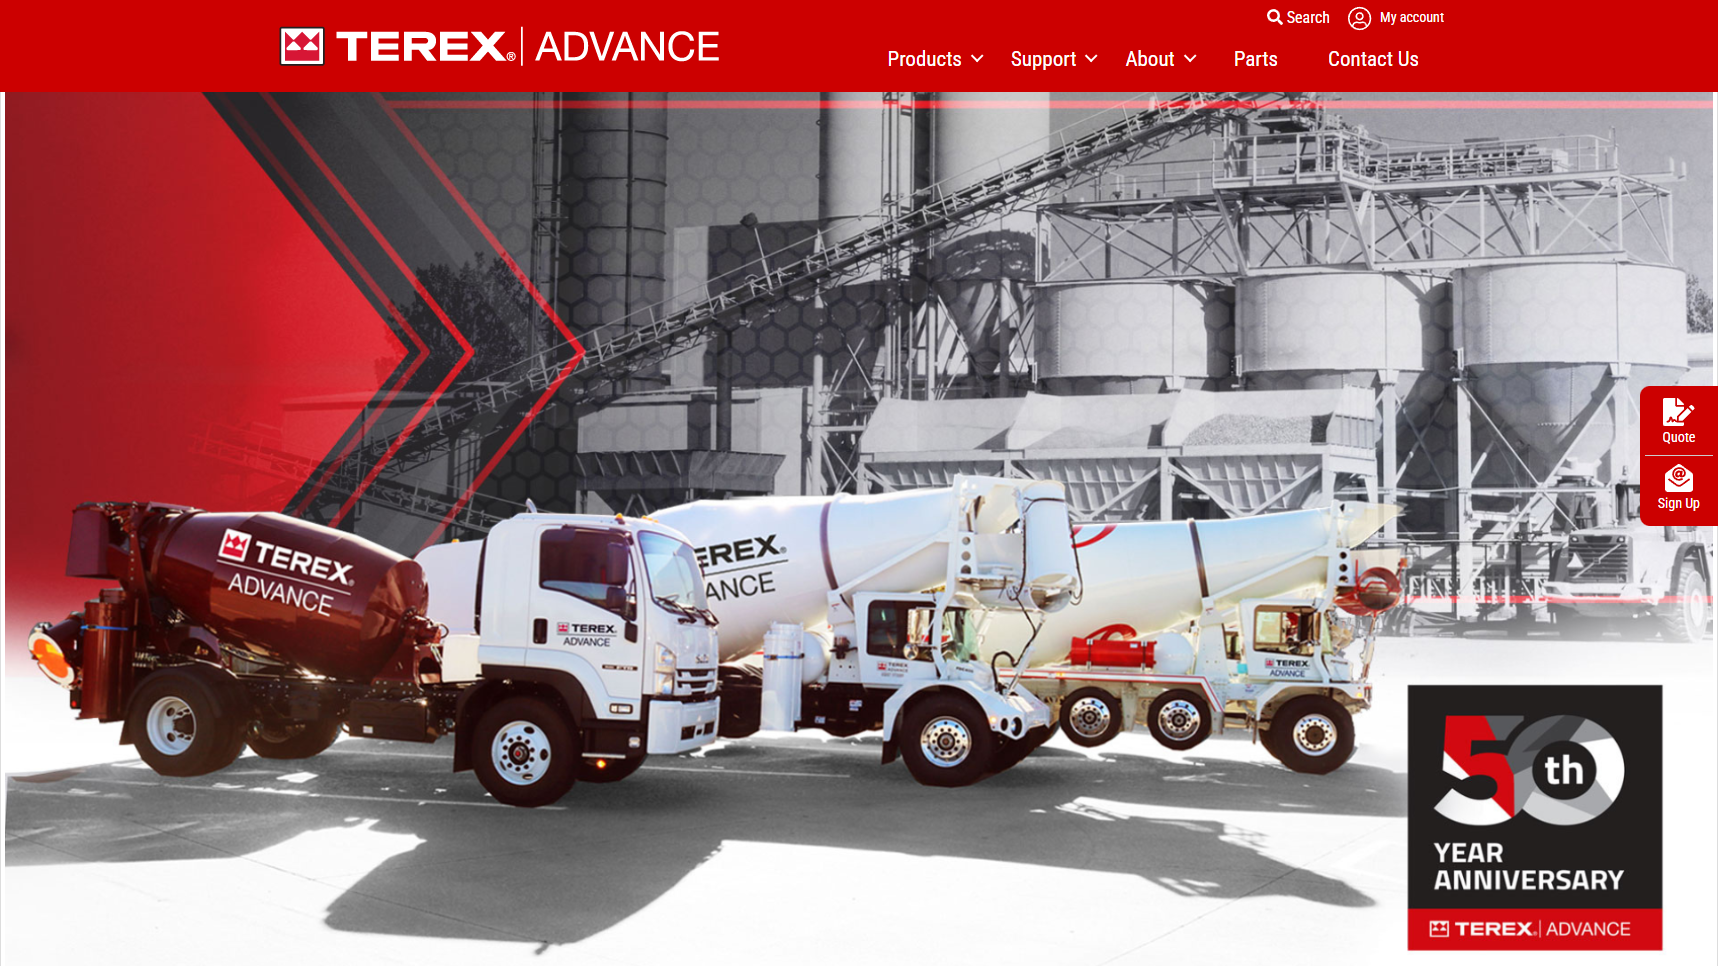 Terex Advance - Concrete Mixer Manufacturer